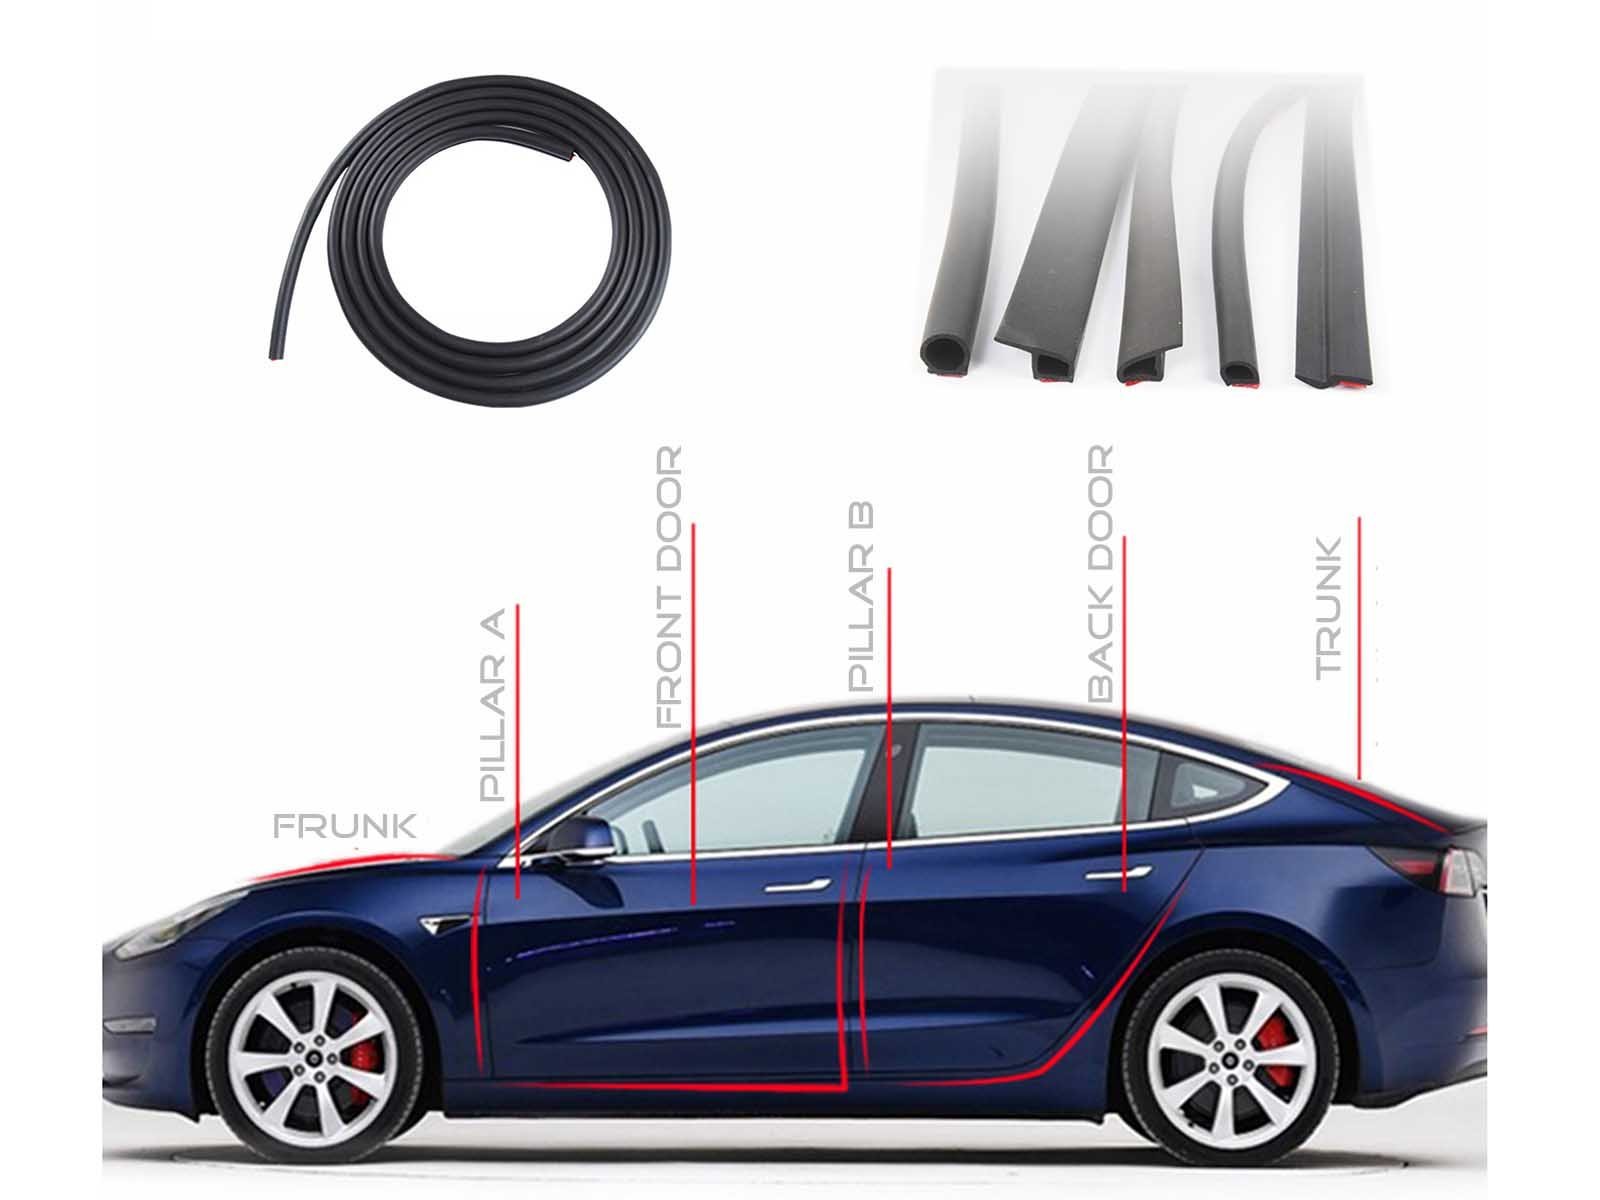 https://www.torque-alliance.com/a/l/de/cdn/shop/products/model-3-rubber-seal-strips-set-4-doorsfrunktrunk-377541_1600x.jpg?v=1612525750